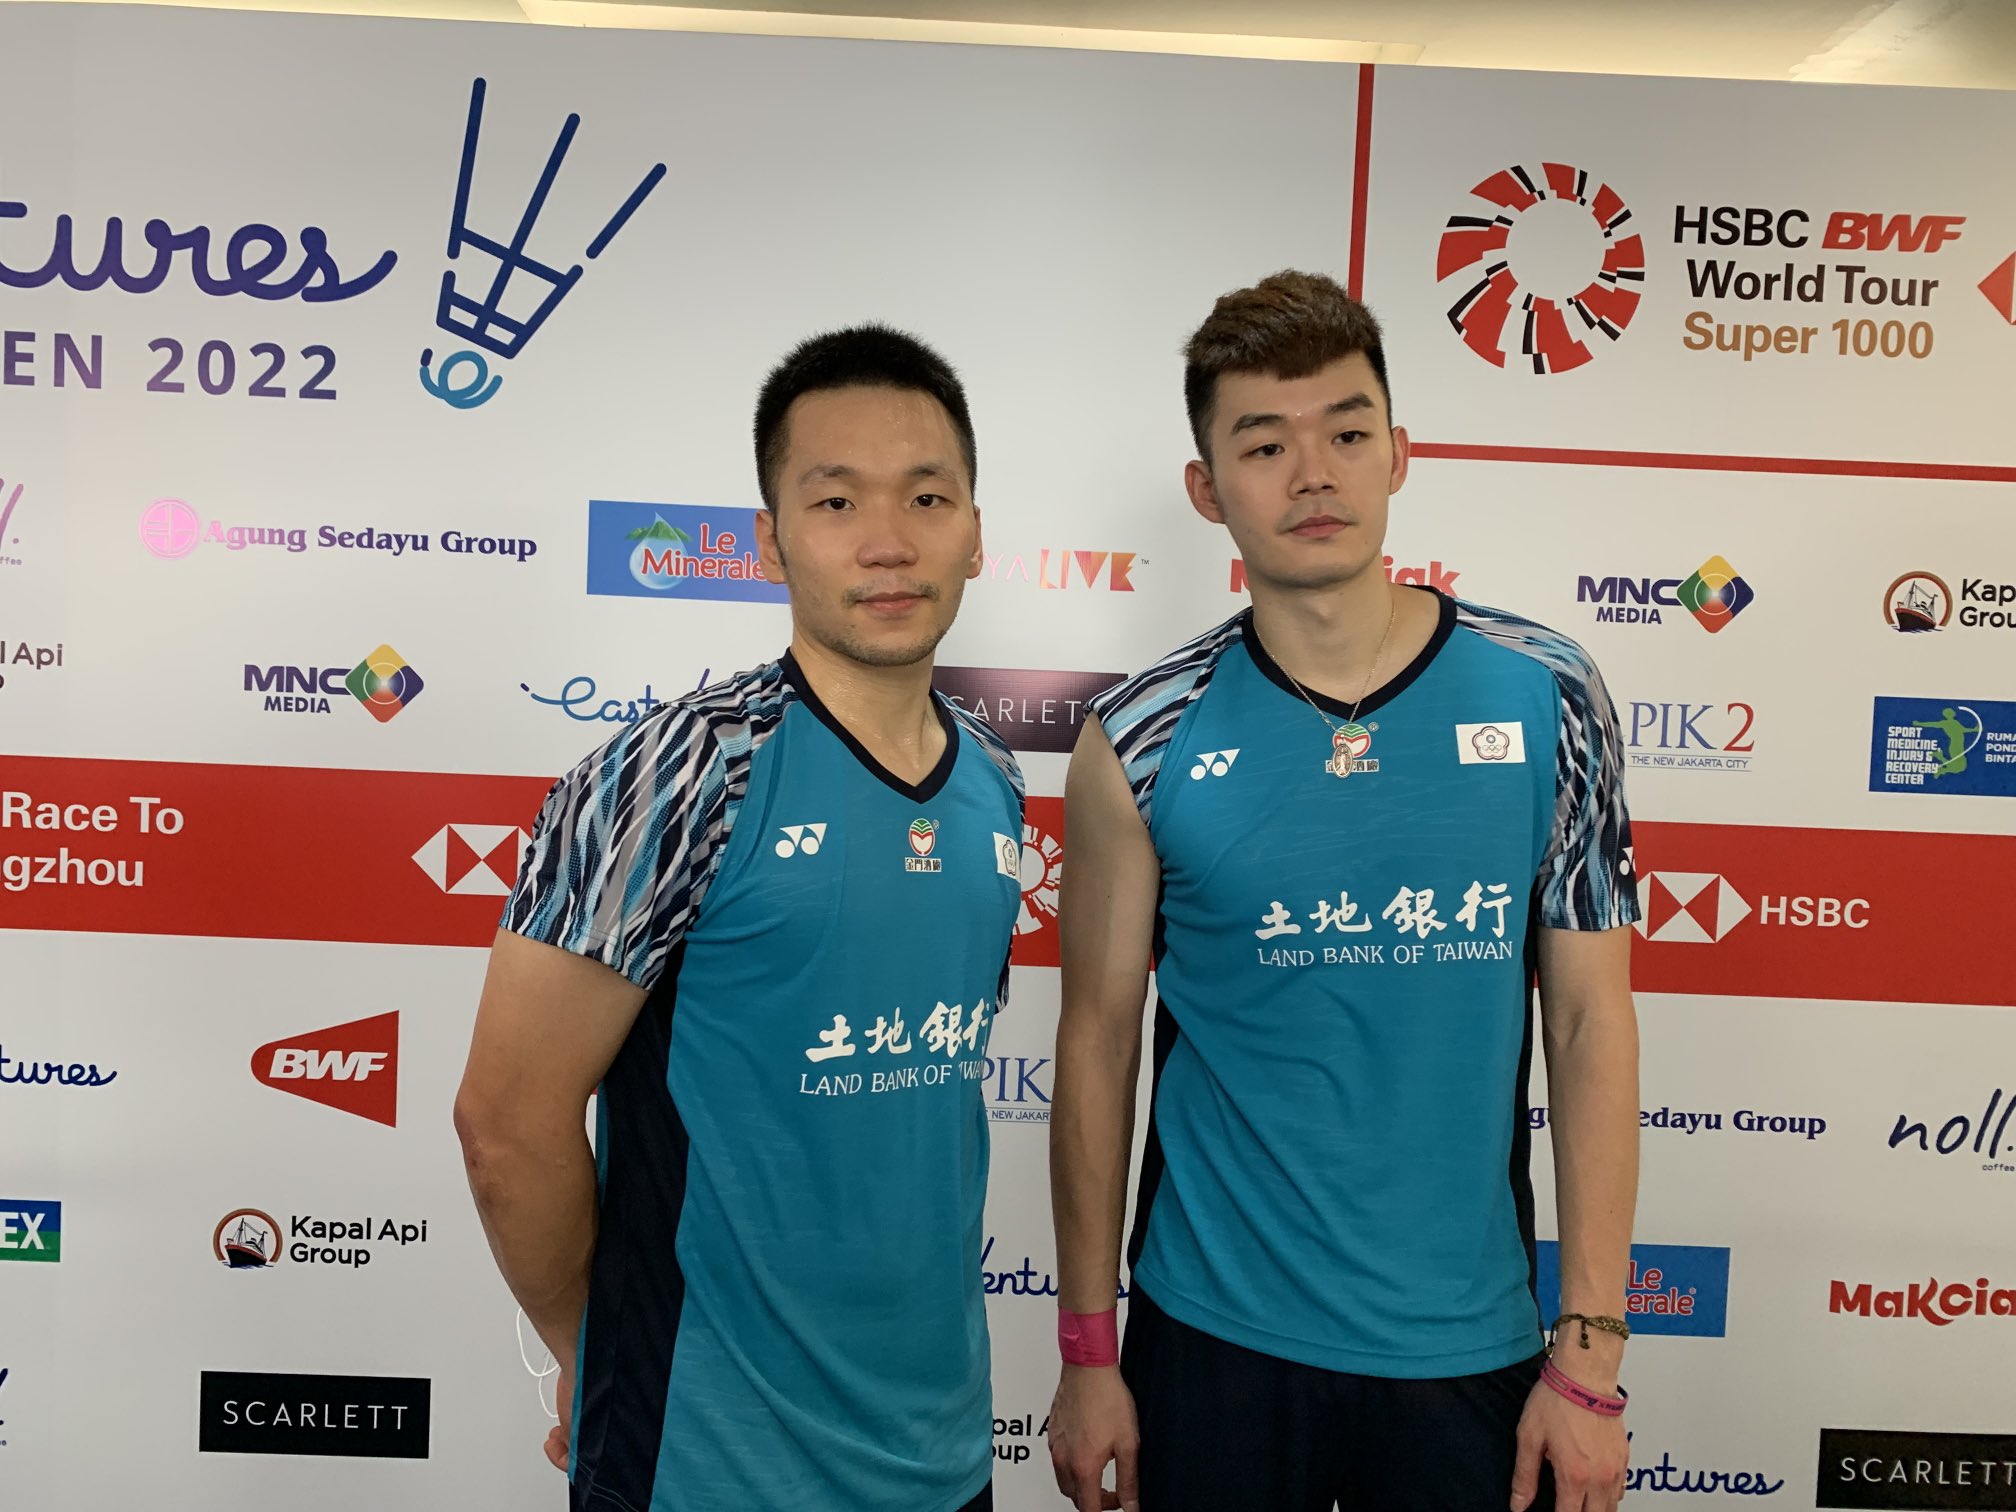 Lee Yang dan Wang Chi-Lin Berpisah Sementara di Denmark Open 2022